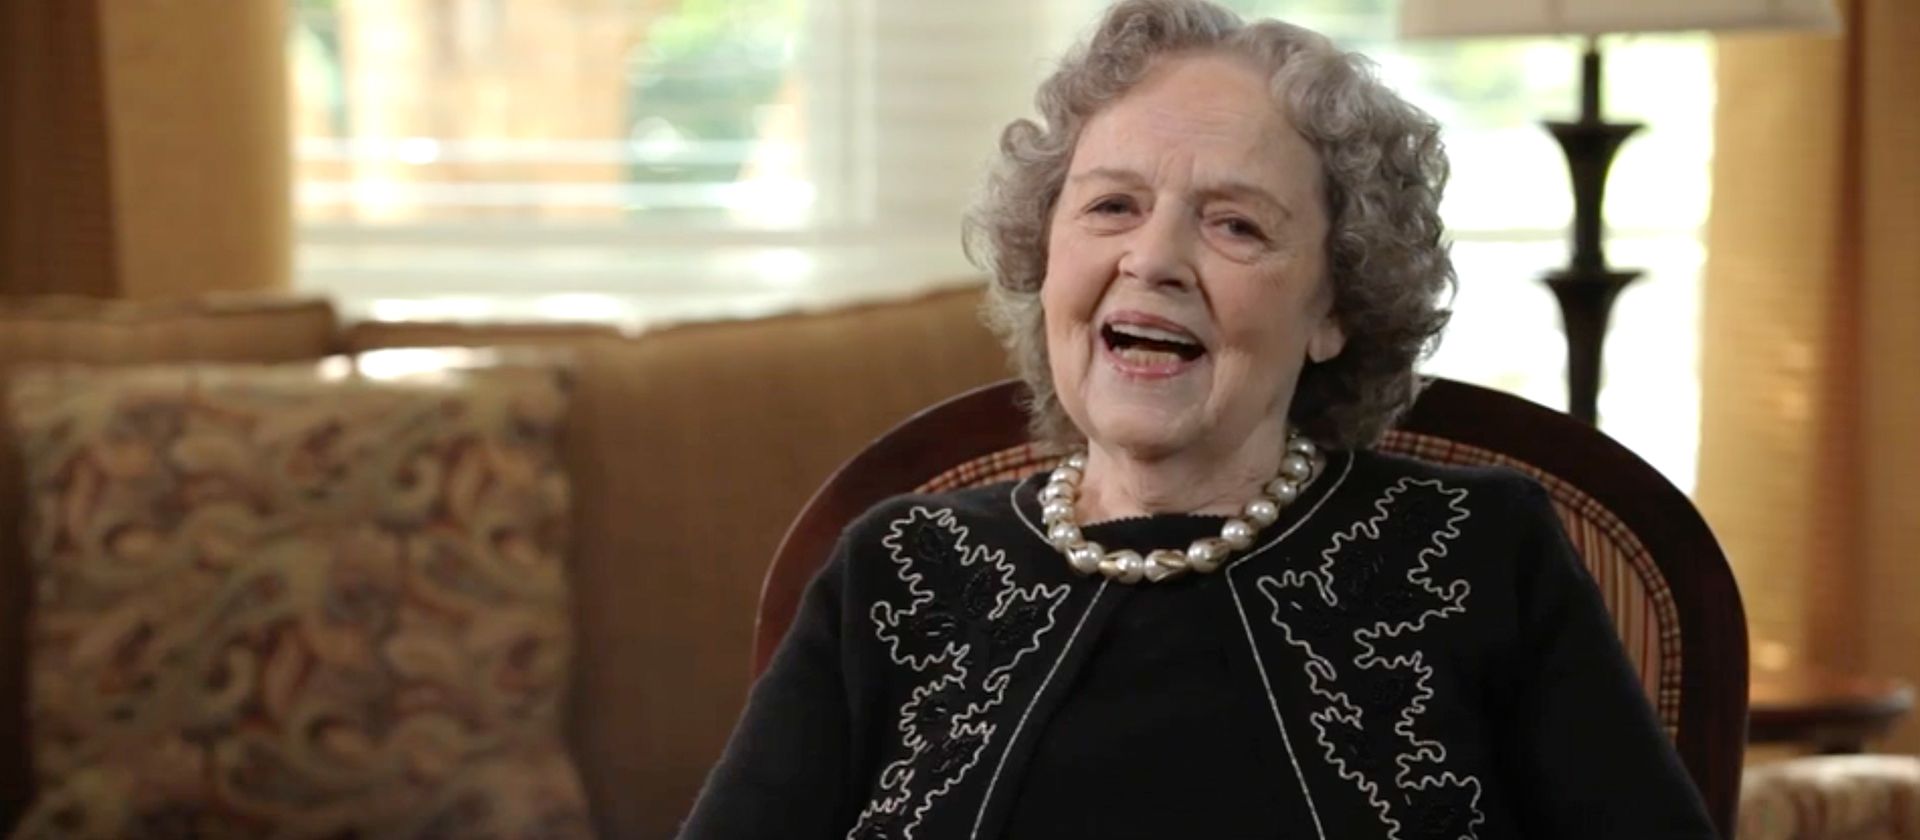 Marthas Transition to Senior Care, Video Stills